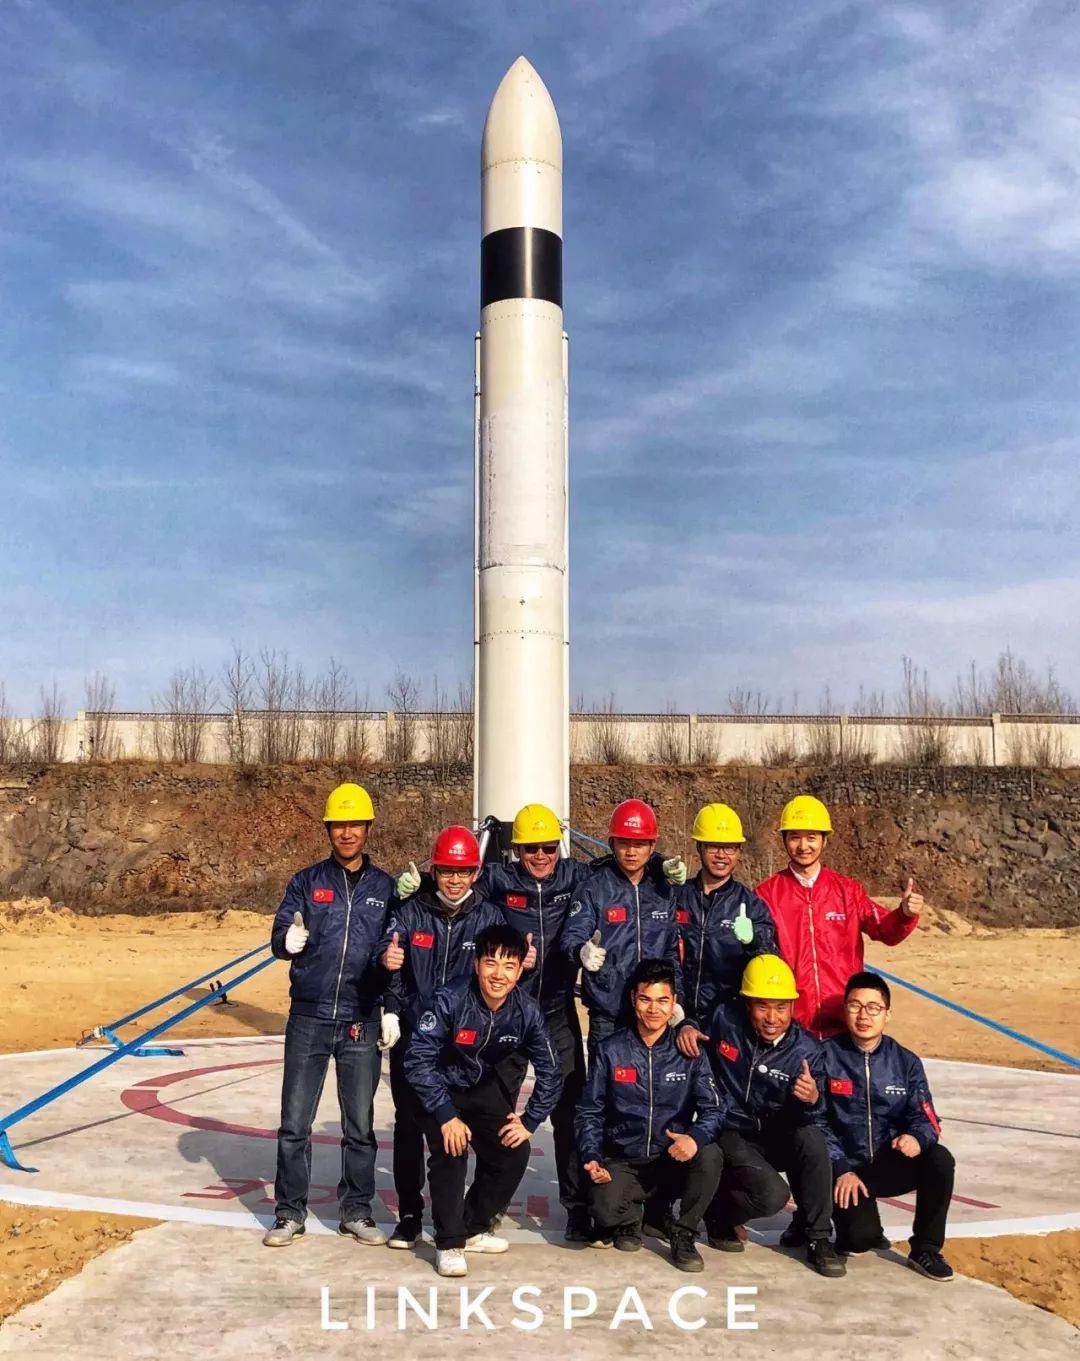 中国新一代可回收火箭完成“第一跳”